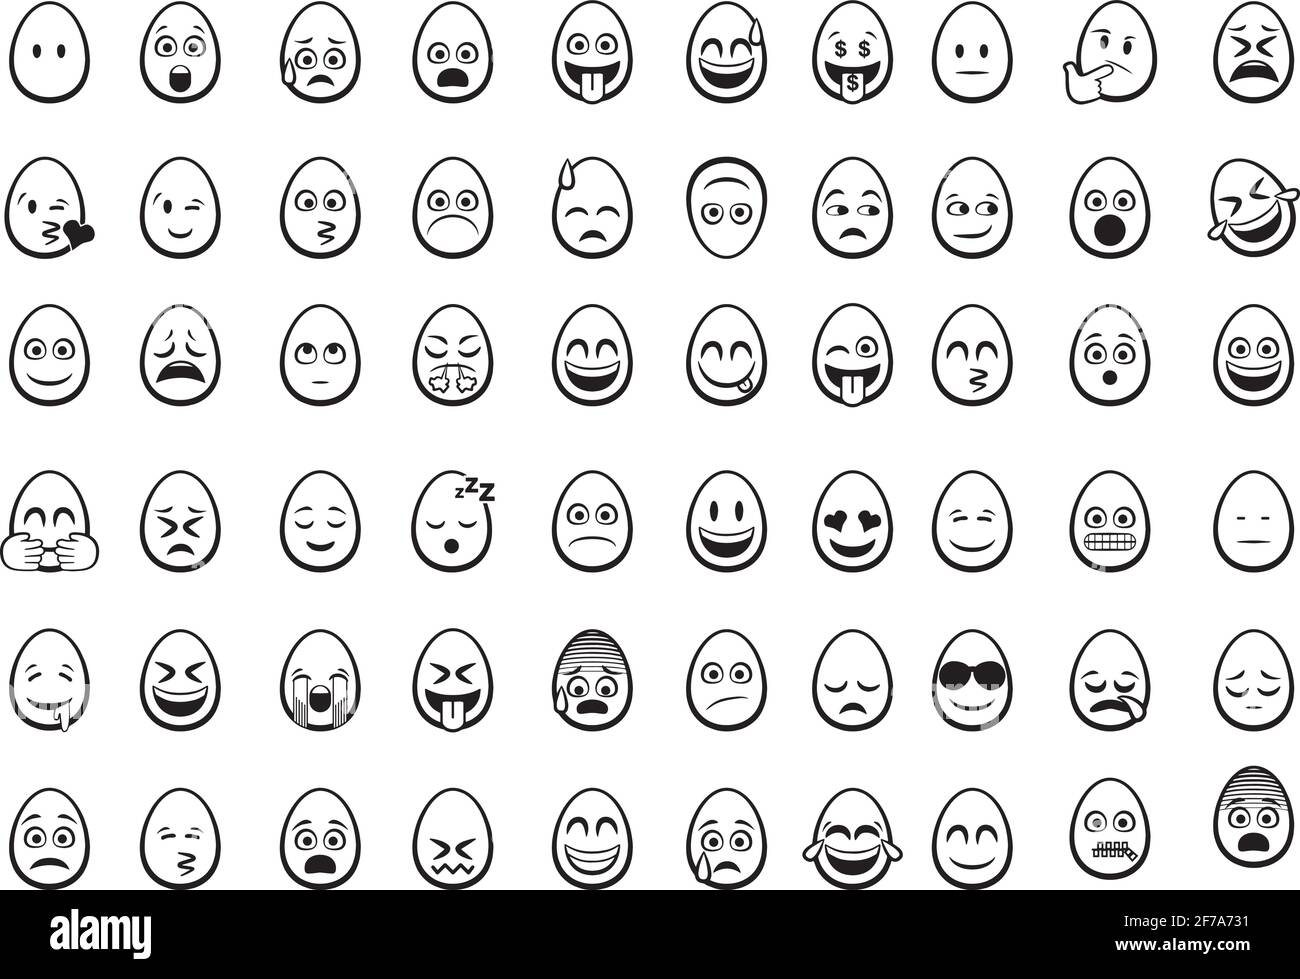 Emoji-Symbole für Eierkopf gesetzt. Eine Sammlung von Eierkopf-Emoji-Icons für iOS-, Android- und Web-Projekte. Stock Vektor